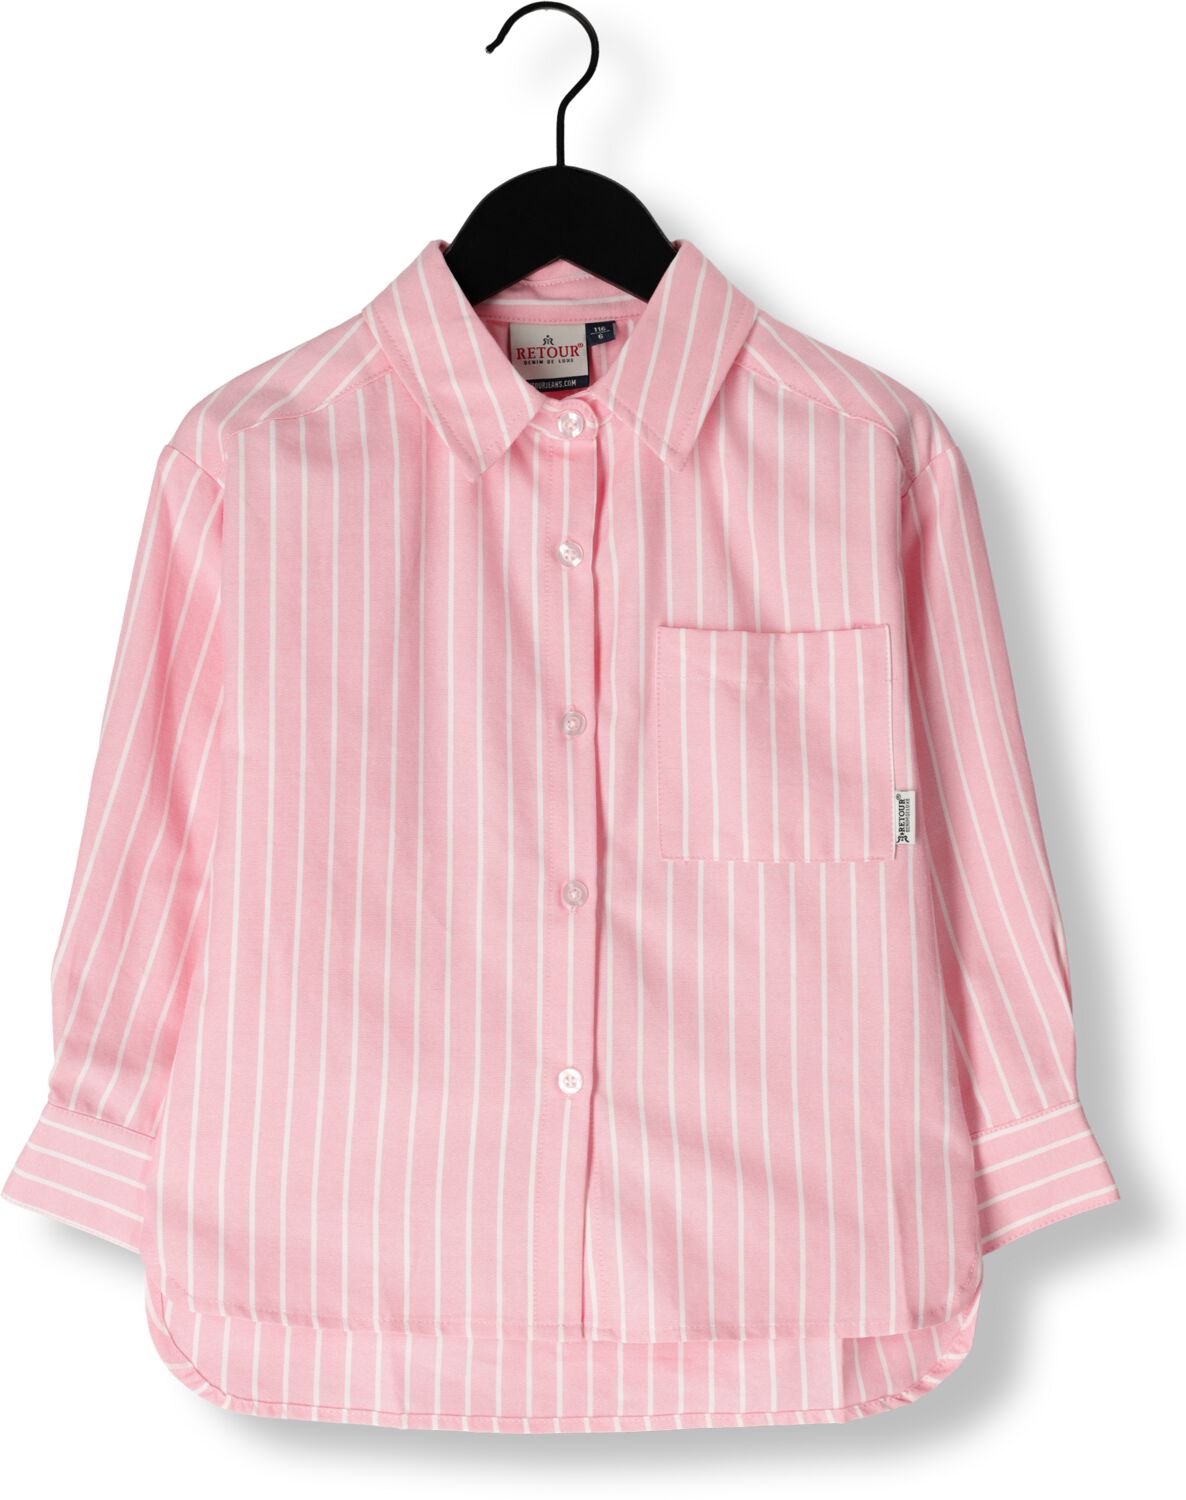 Retour Jeans gestreepte blouse Bibi roze wit Meisjes Katoen Klassieke kraag 134 140